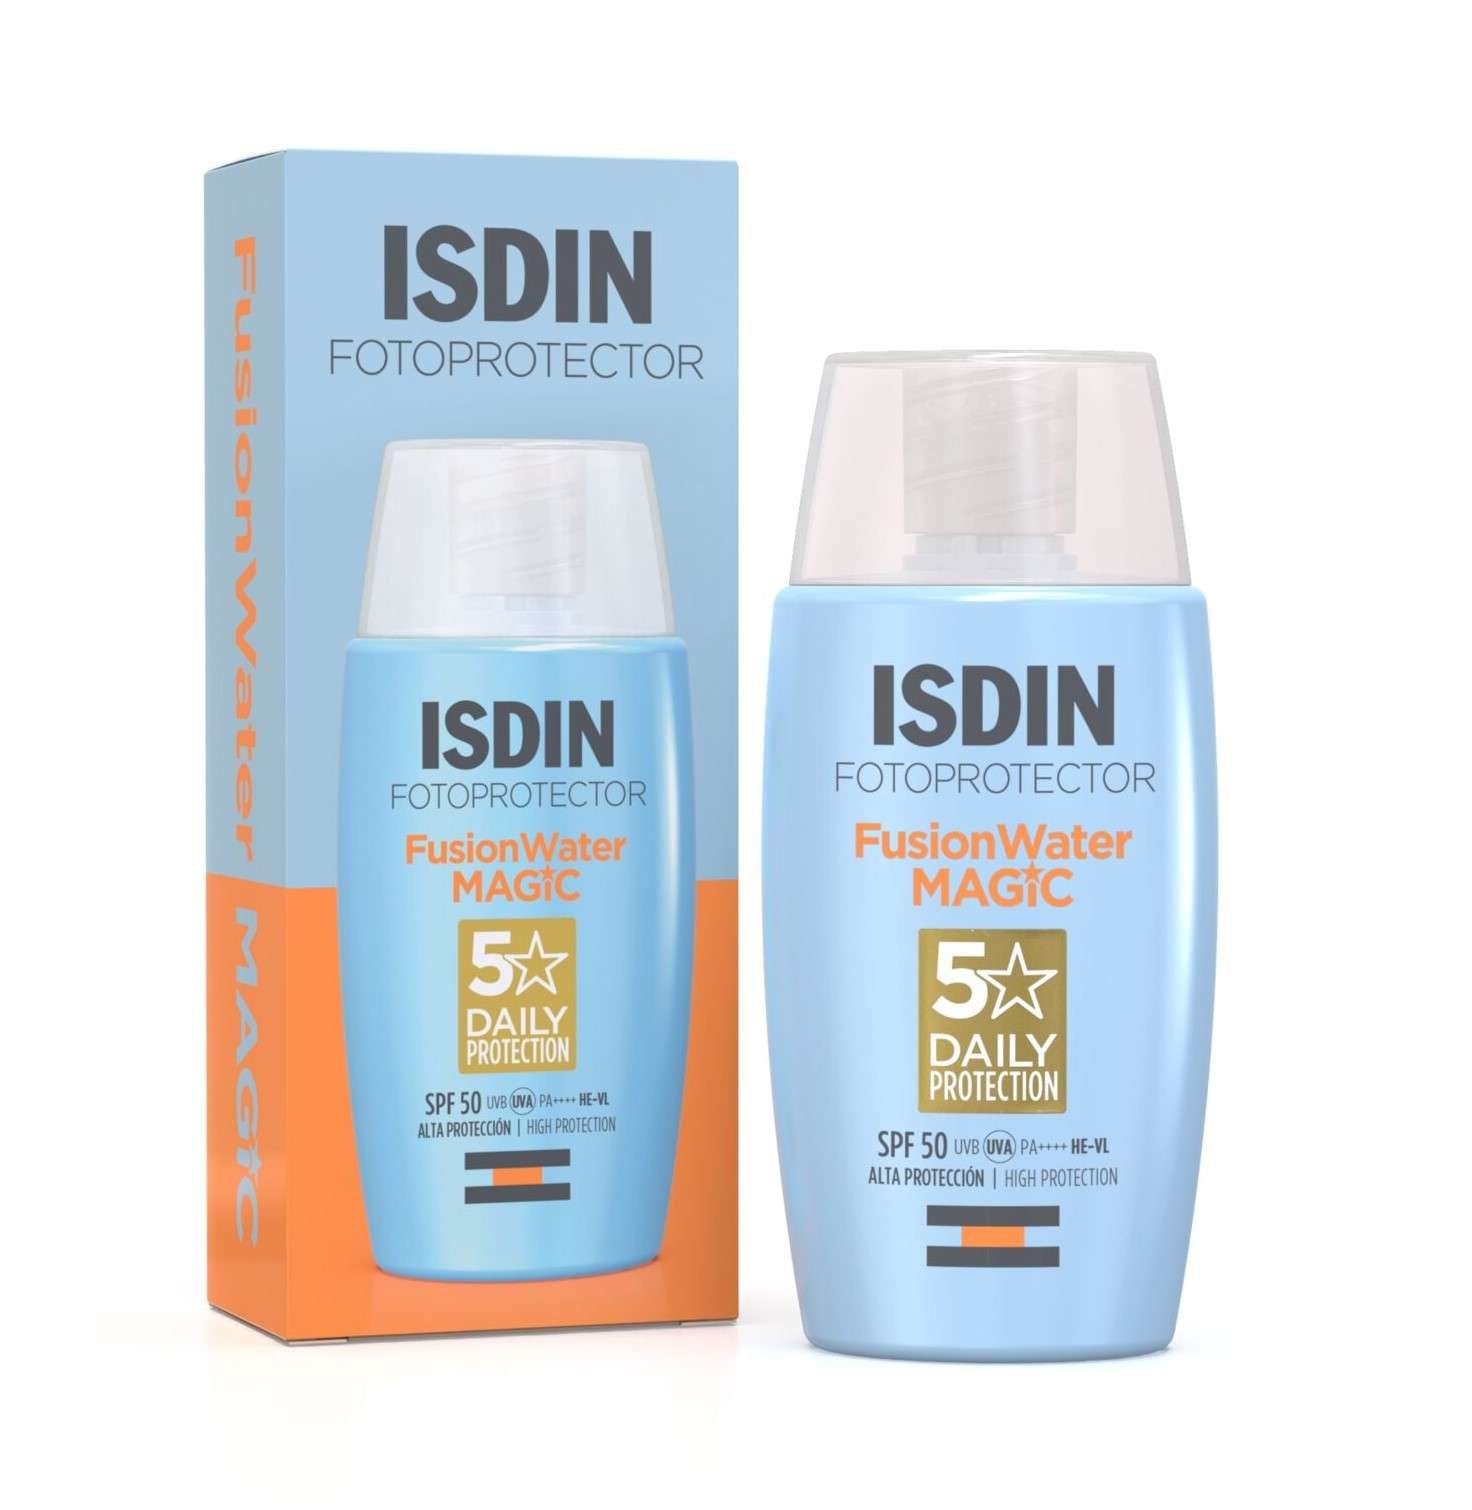 ISDIN Fotoprotector Fusion Water Magic SPF50 50ML- Protetor solar facial ultraligeiro